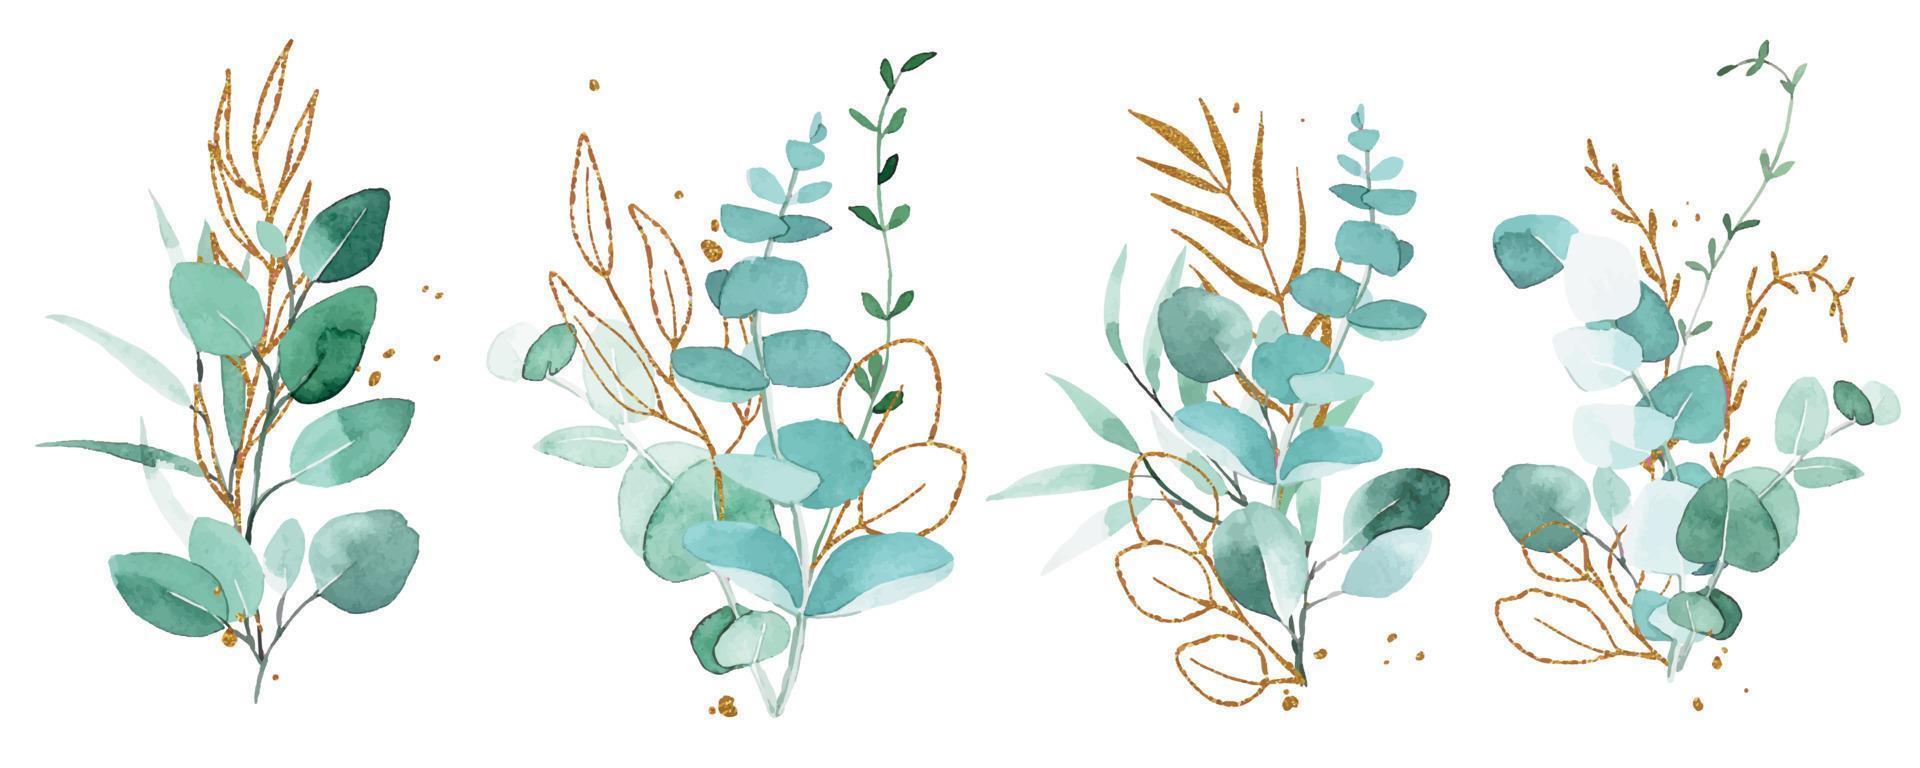 dibujo de acuarela. conjunto de ramos, composiciones de hojas de eucalipto y elementos dorados. hojas verdes y doradas en estilo vintage. vector